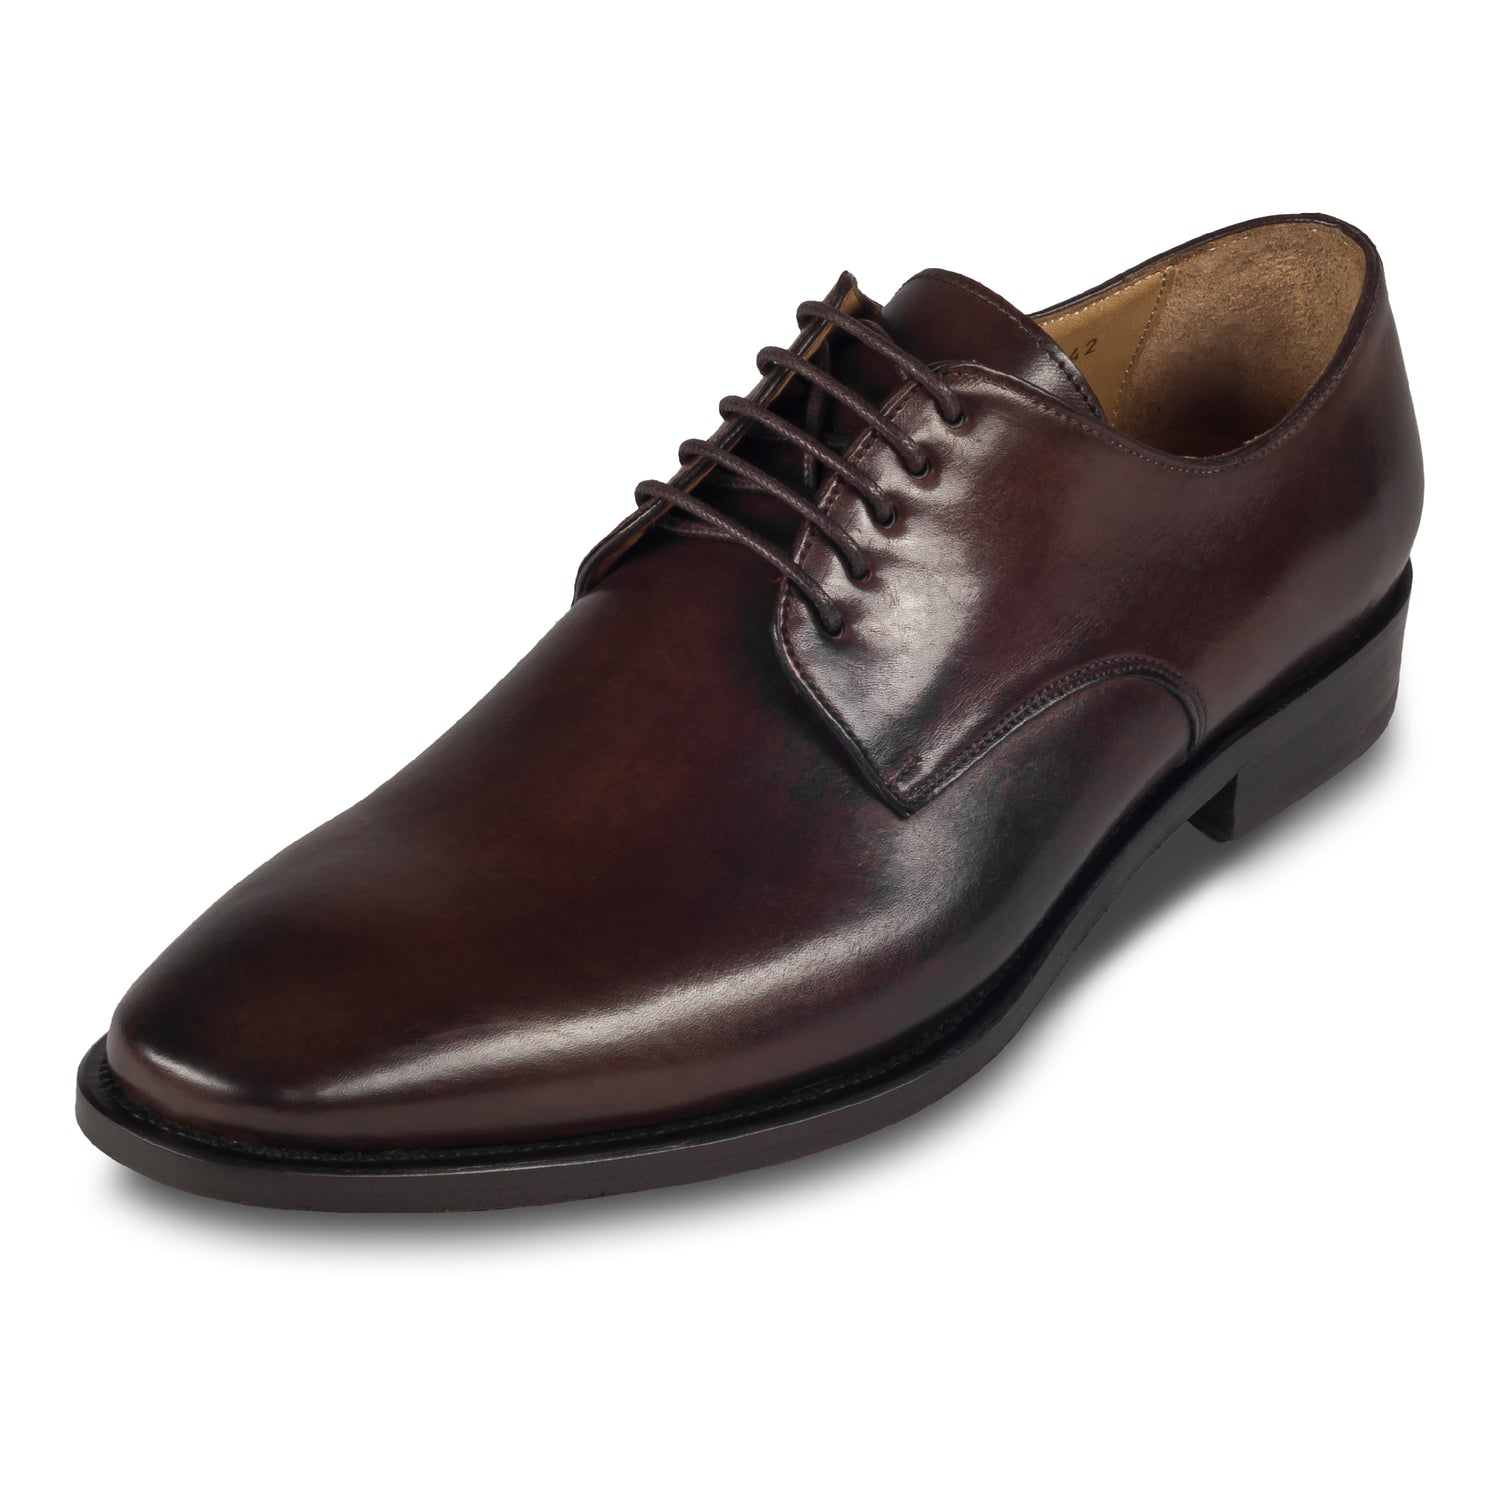 BRECOS – Italienische Herren Anzugschuhe, Plain Derby Schnürer in dunkel braun. Handgefertigt und durchgenäht. Schräge Ansicht linker Schuh.